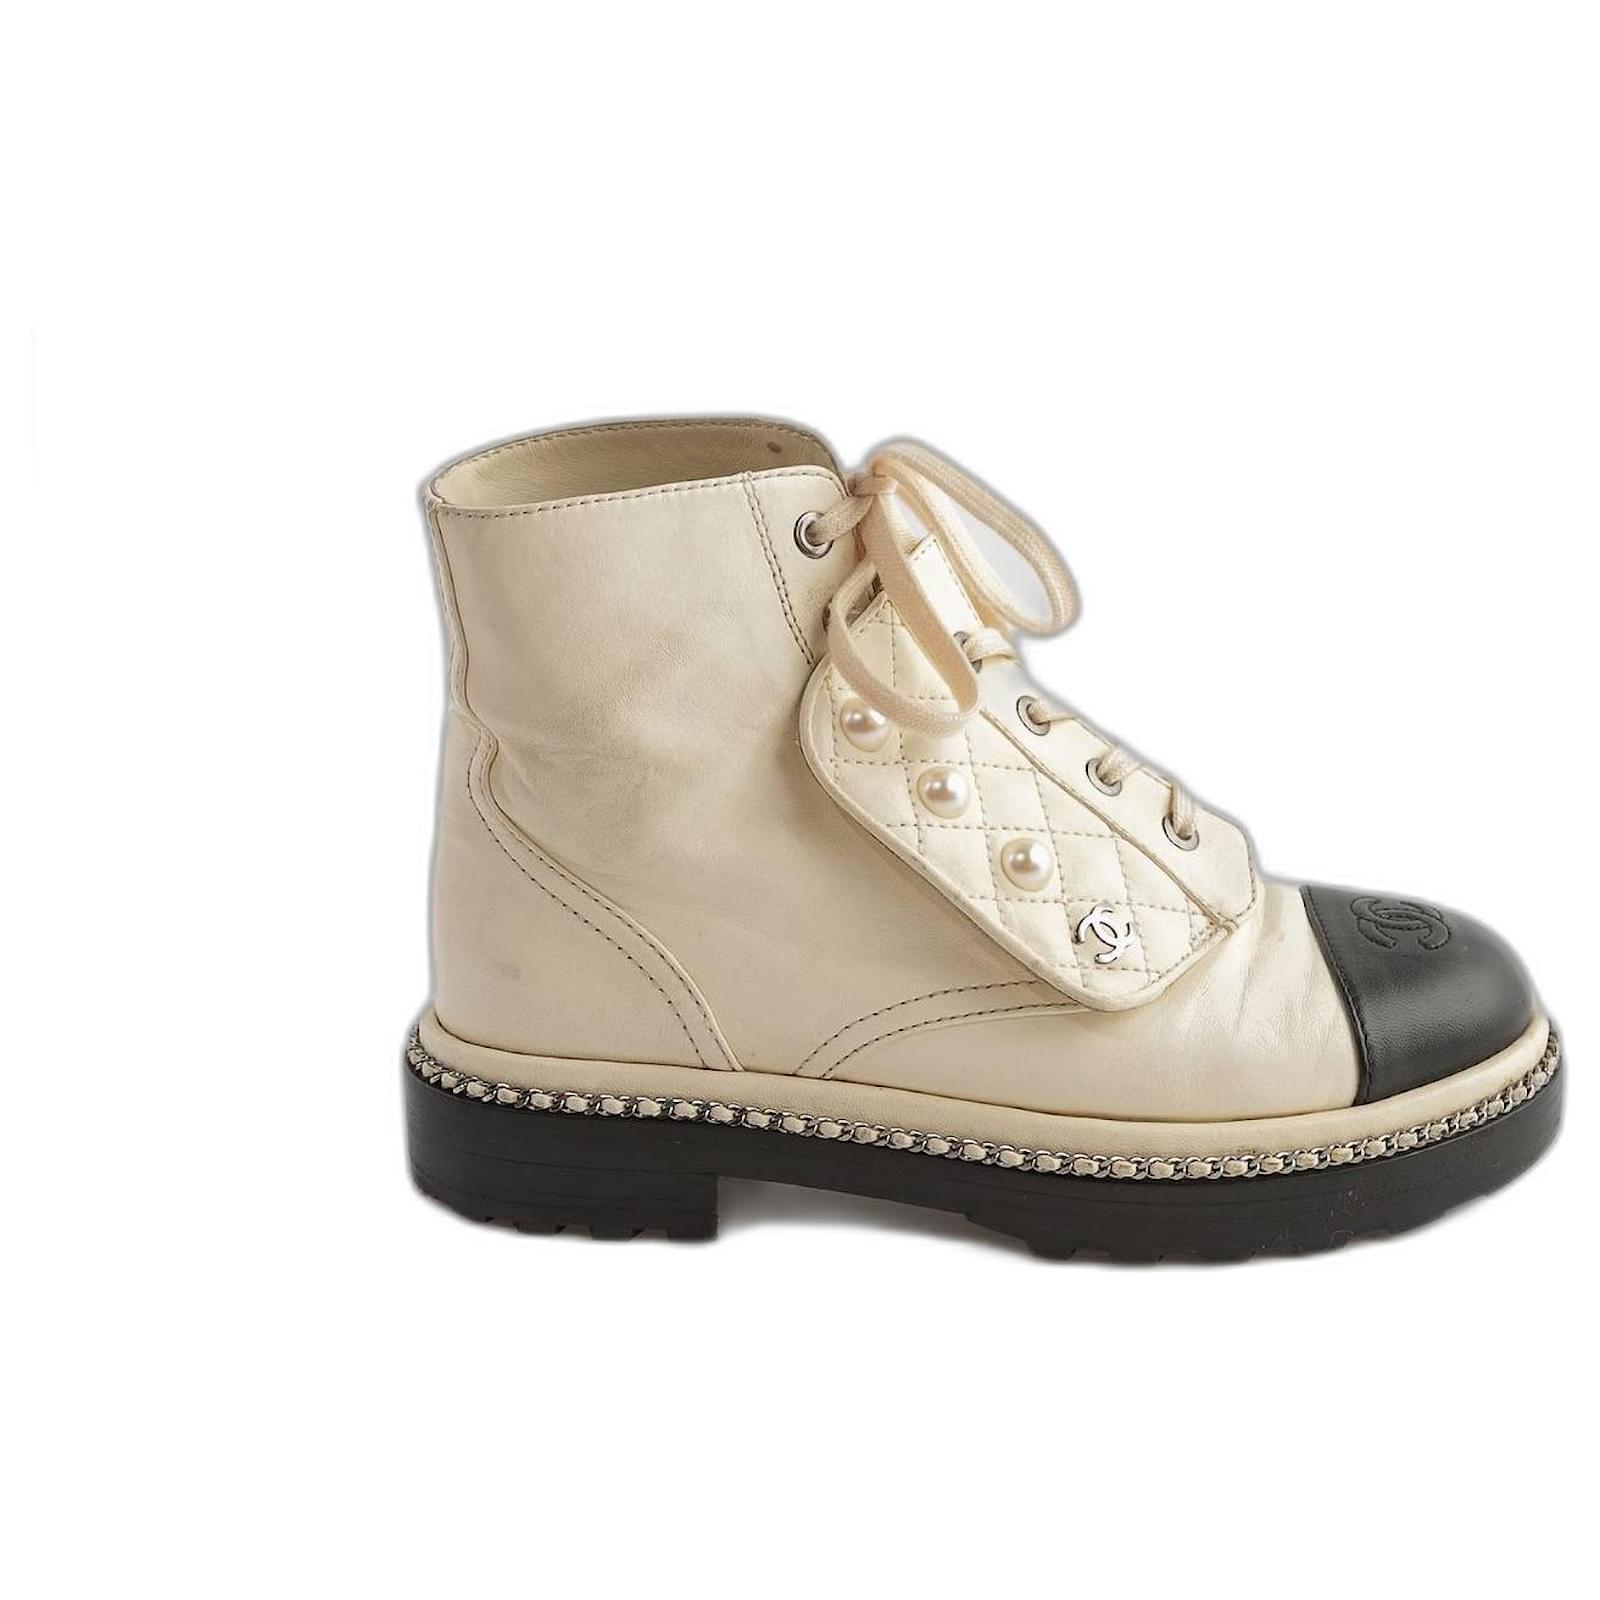 Shop CHANEL ICON 2021-22FW High boots (G38428 Y55553 K3407, G38428 Y55553  94305, G38428 Y55553 K3408) by lufine